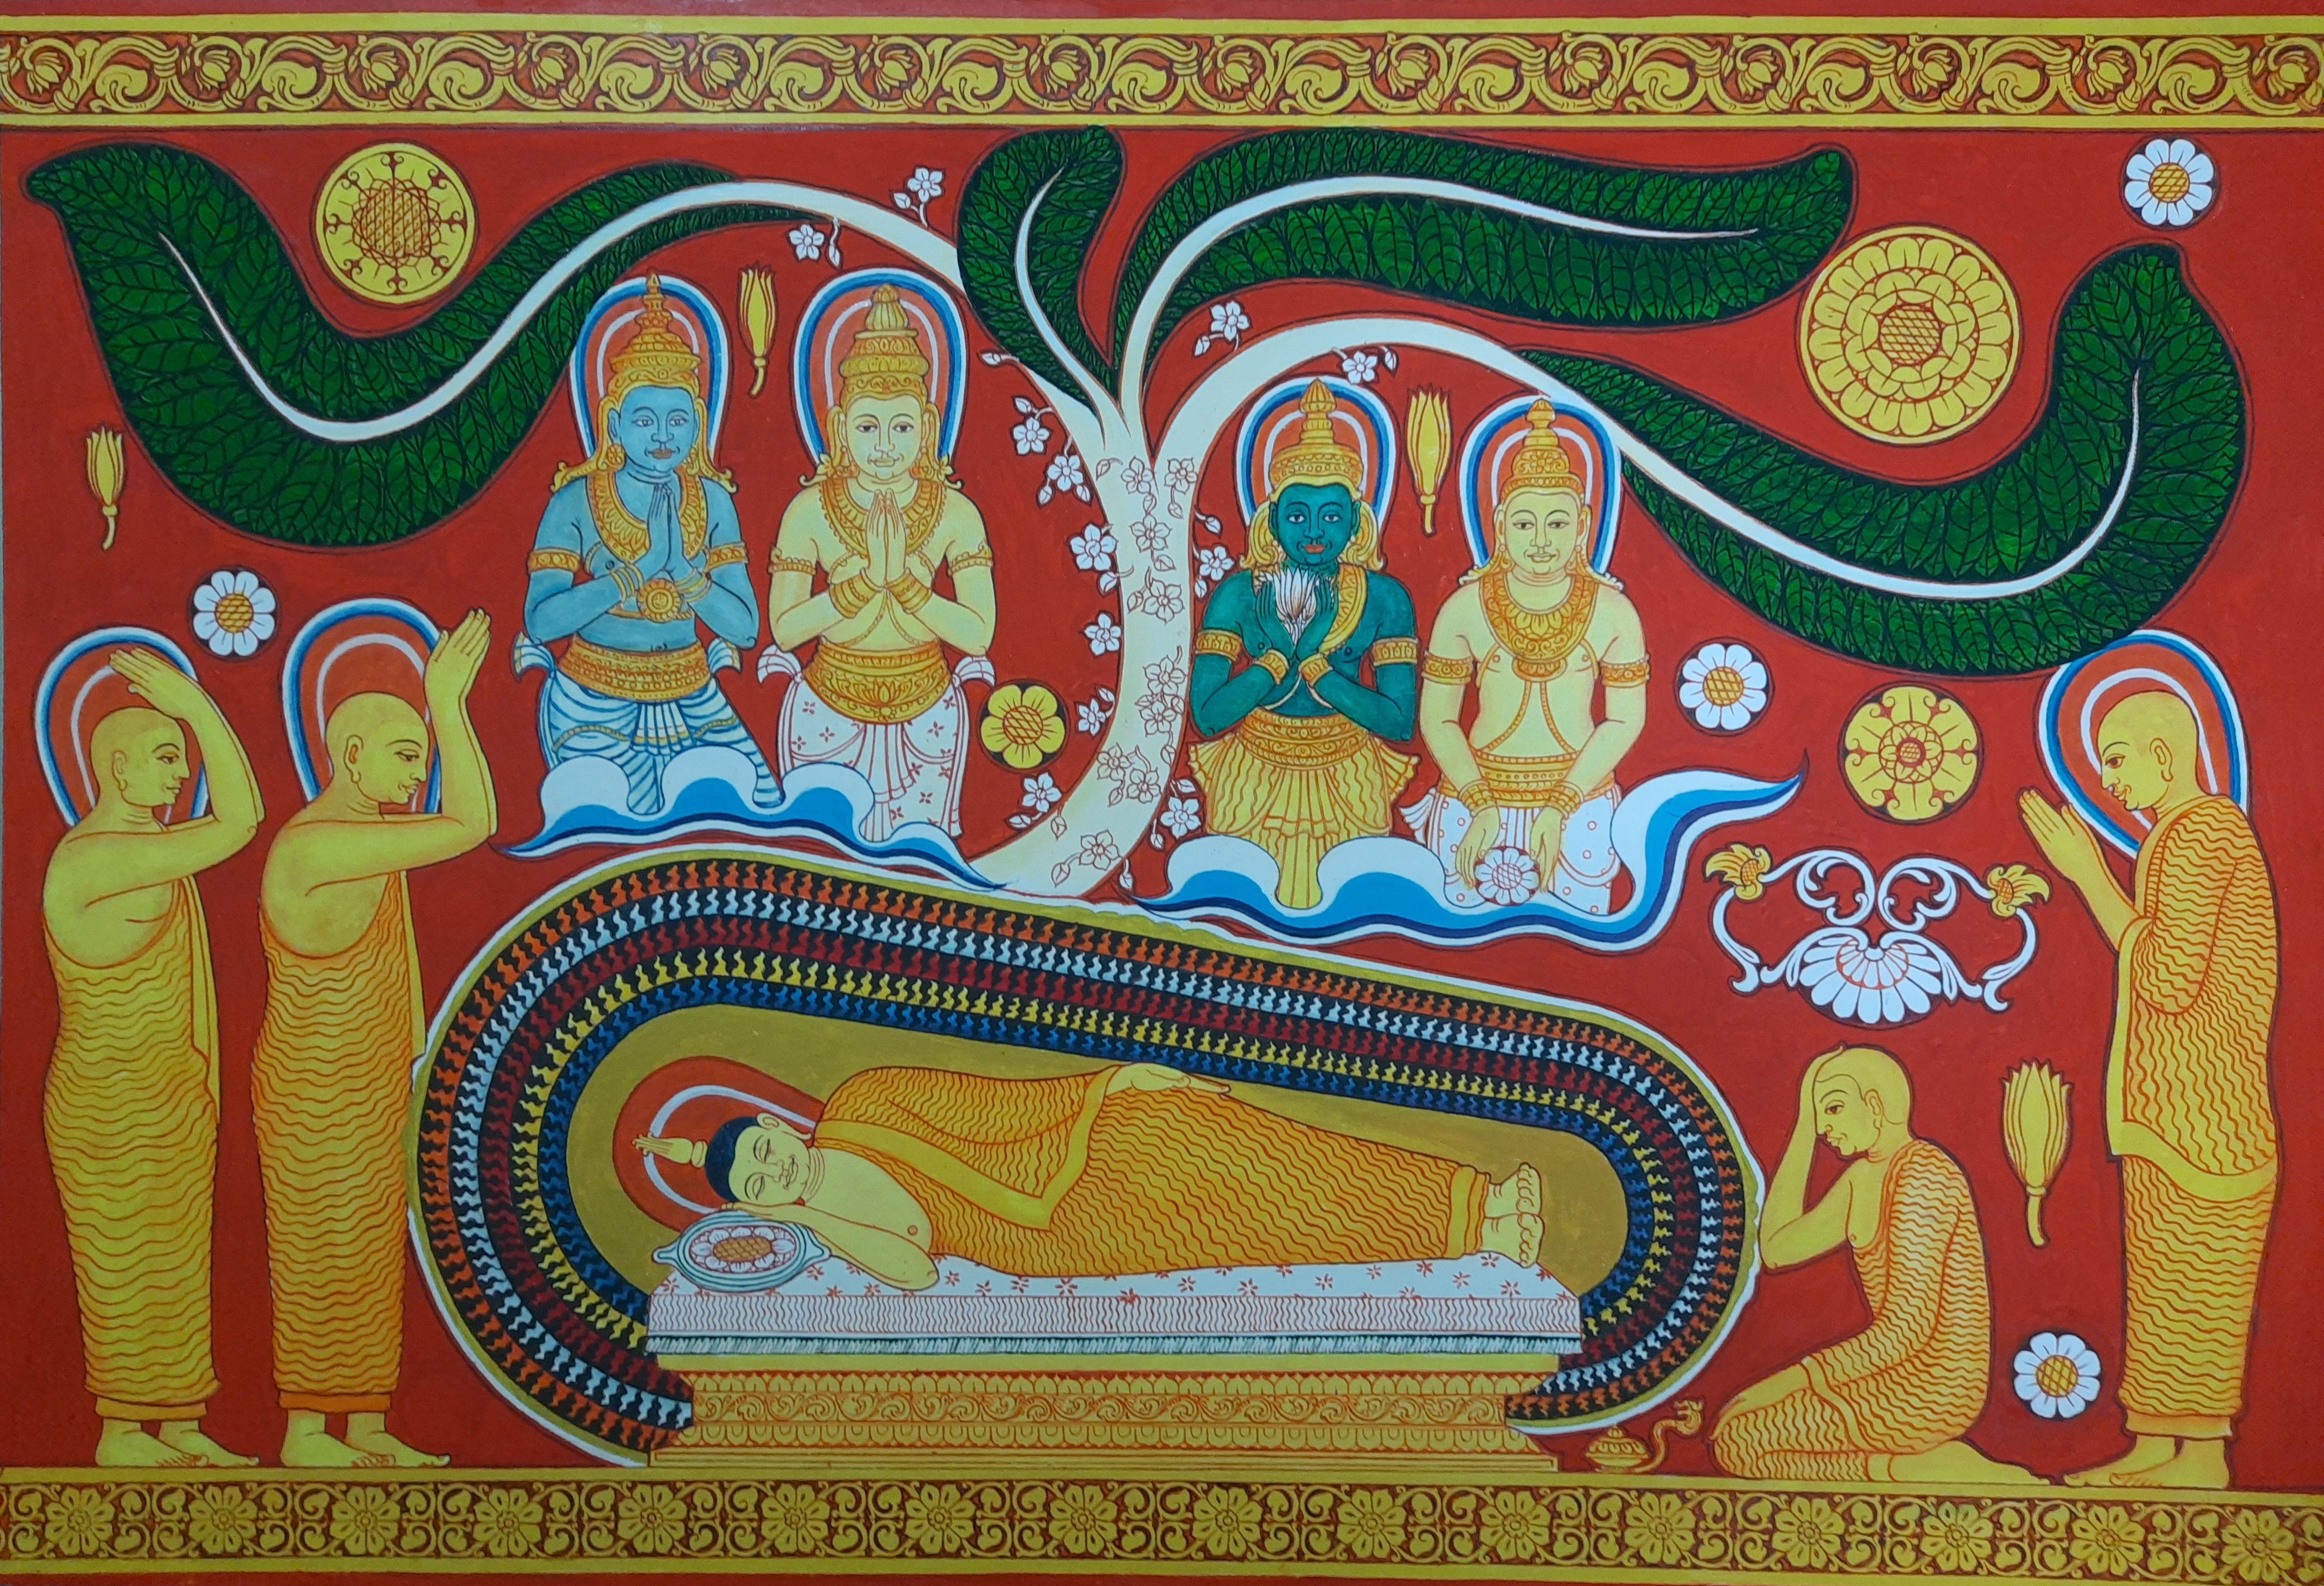 parinirwanaya by Hemantha Bogahawaththa